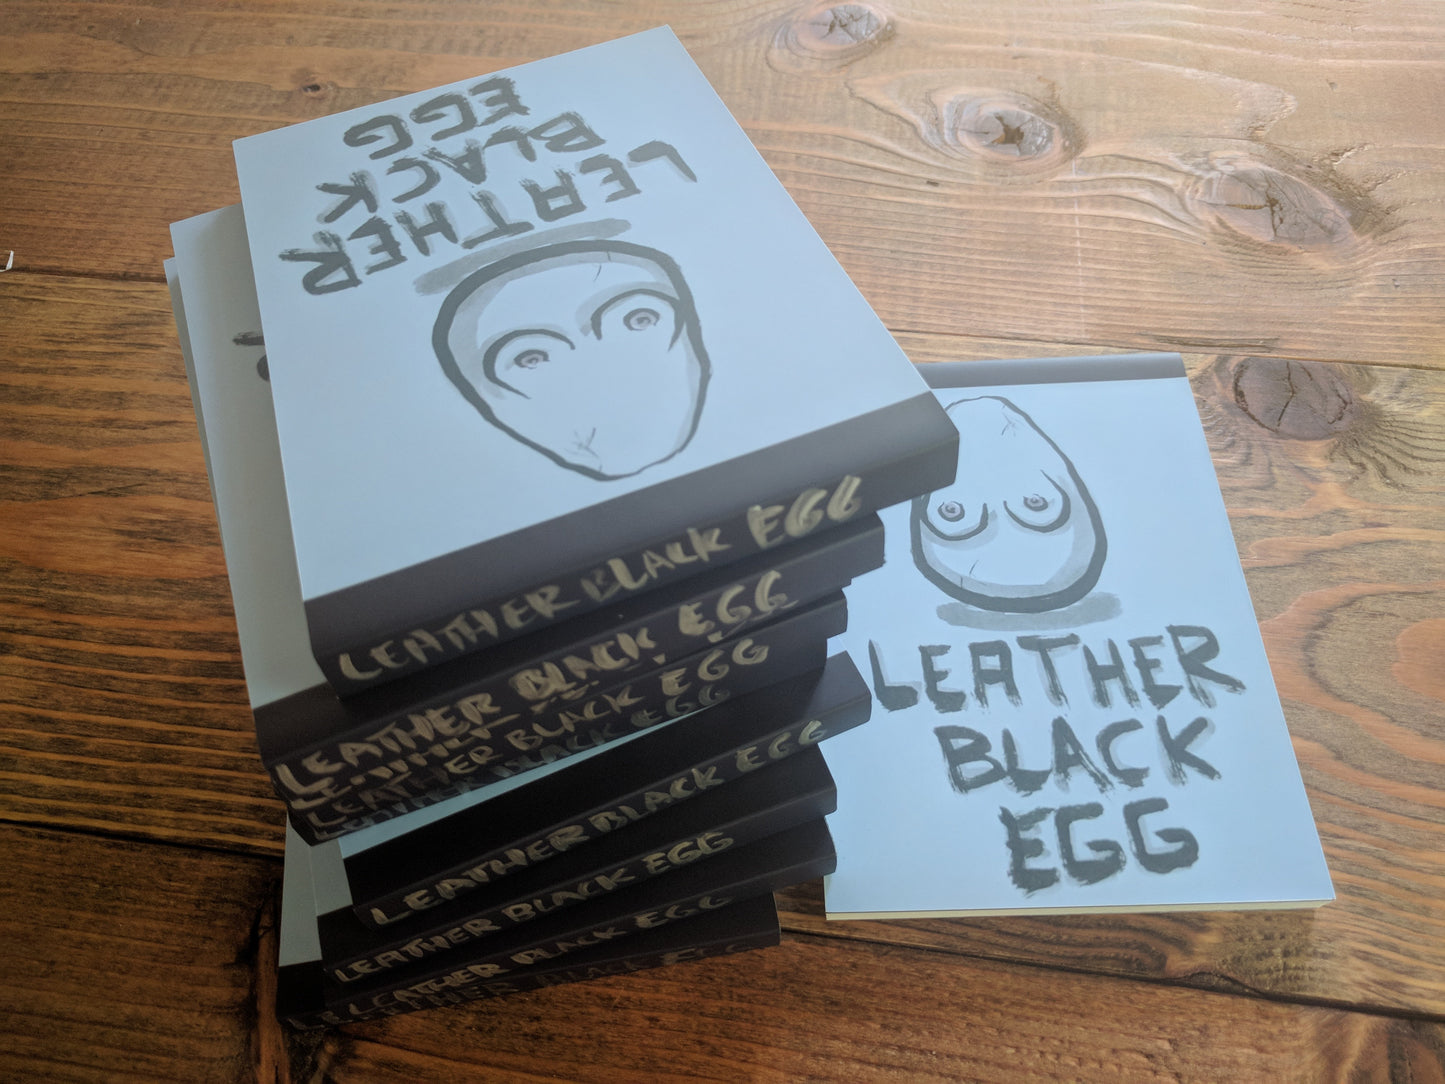 Sketchbook:  Leather Black Egg